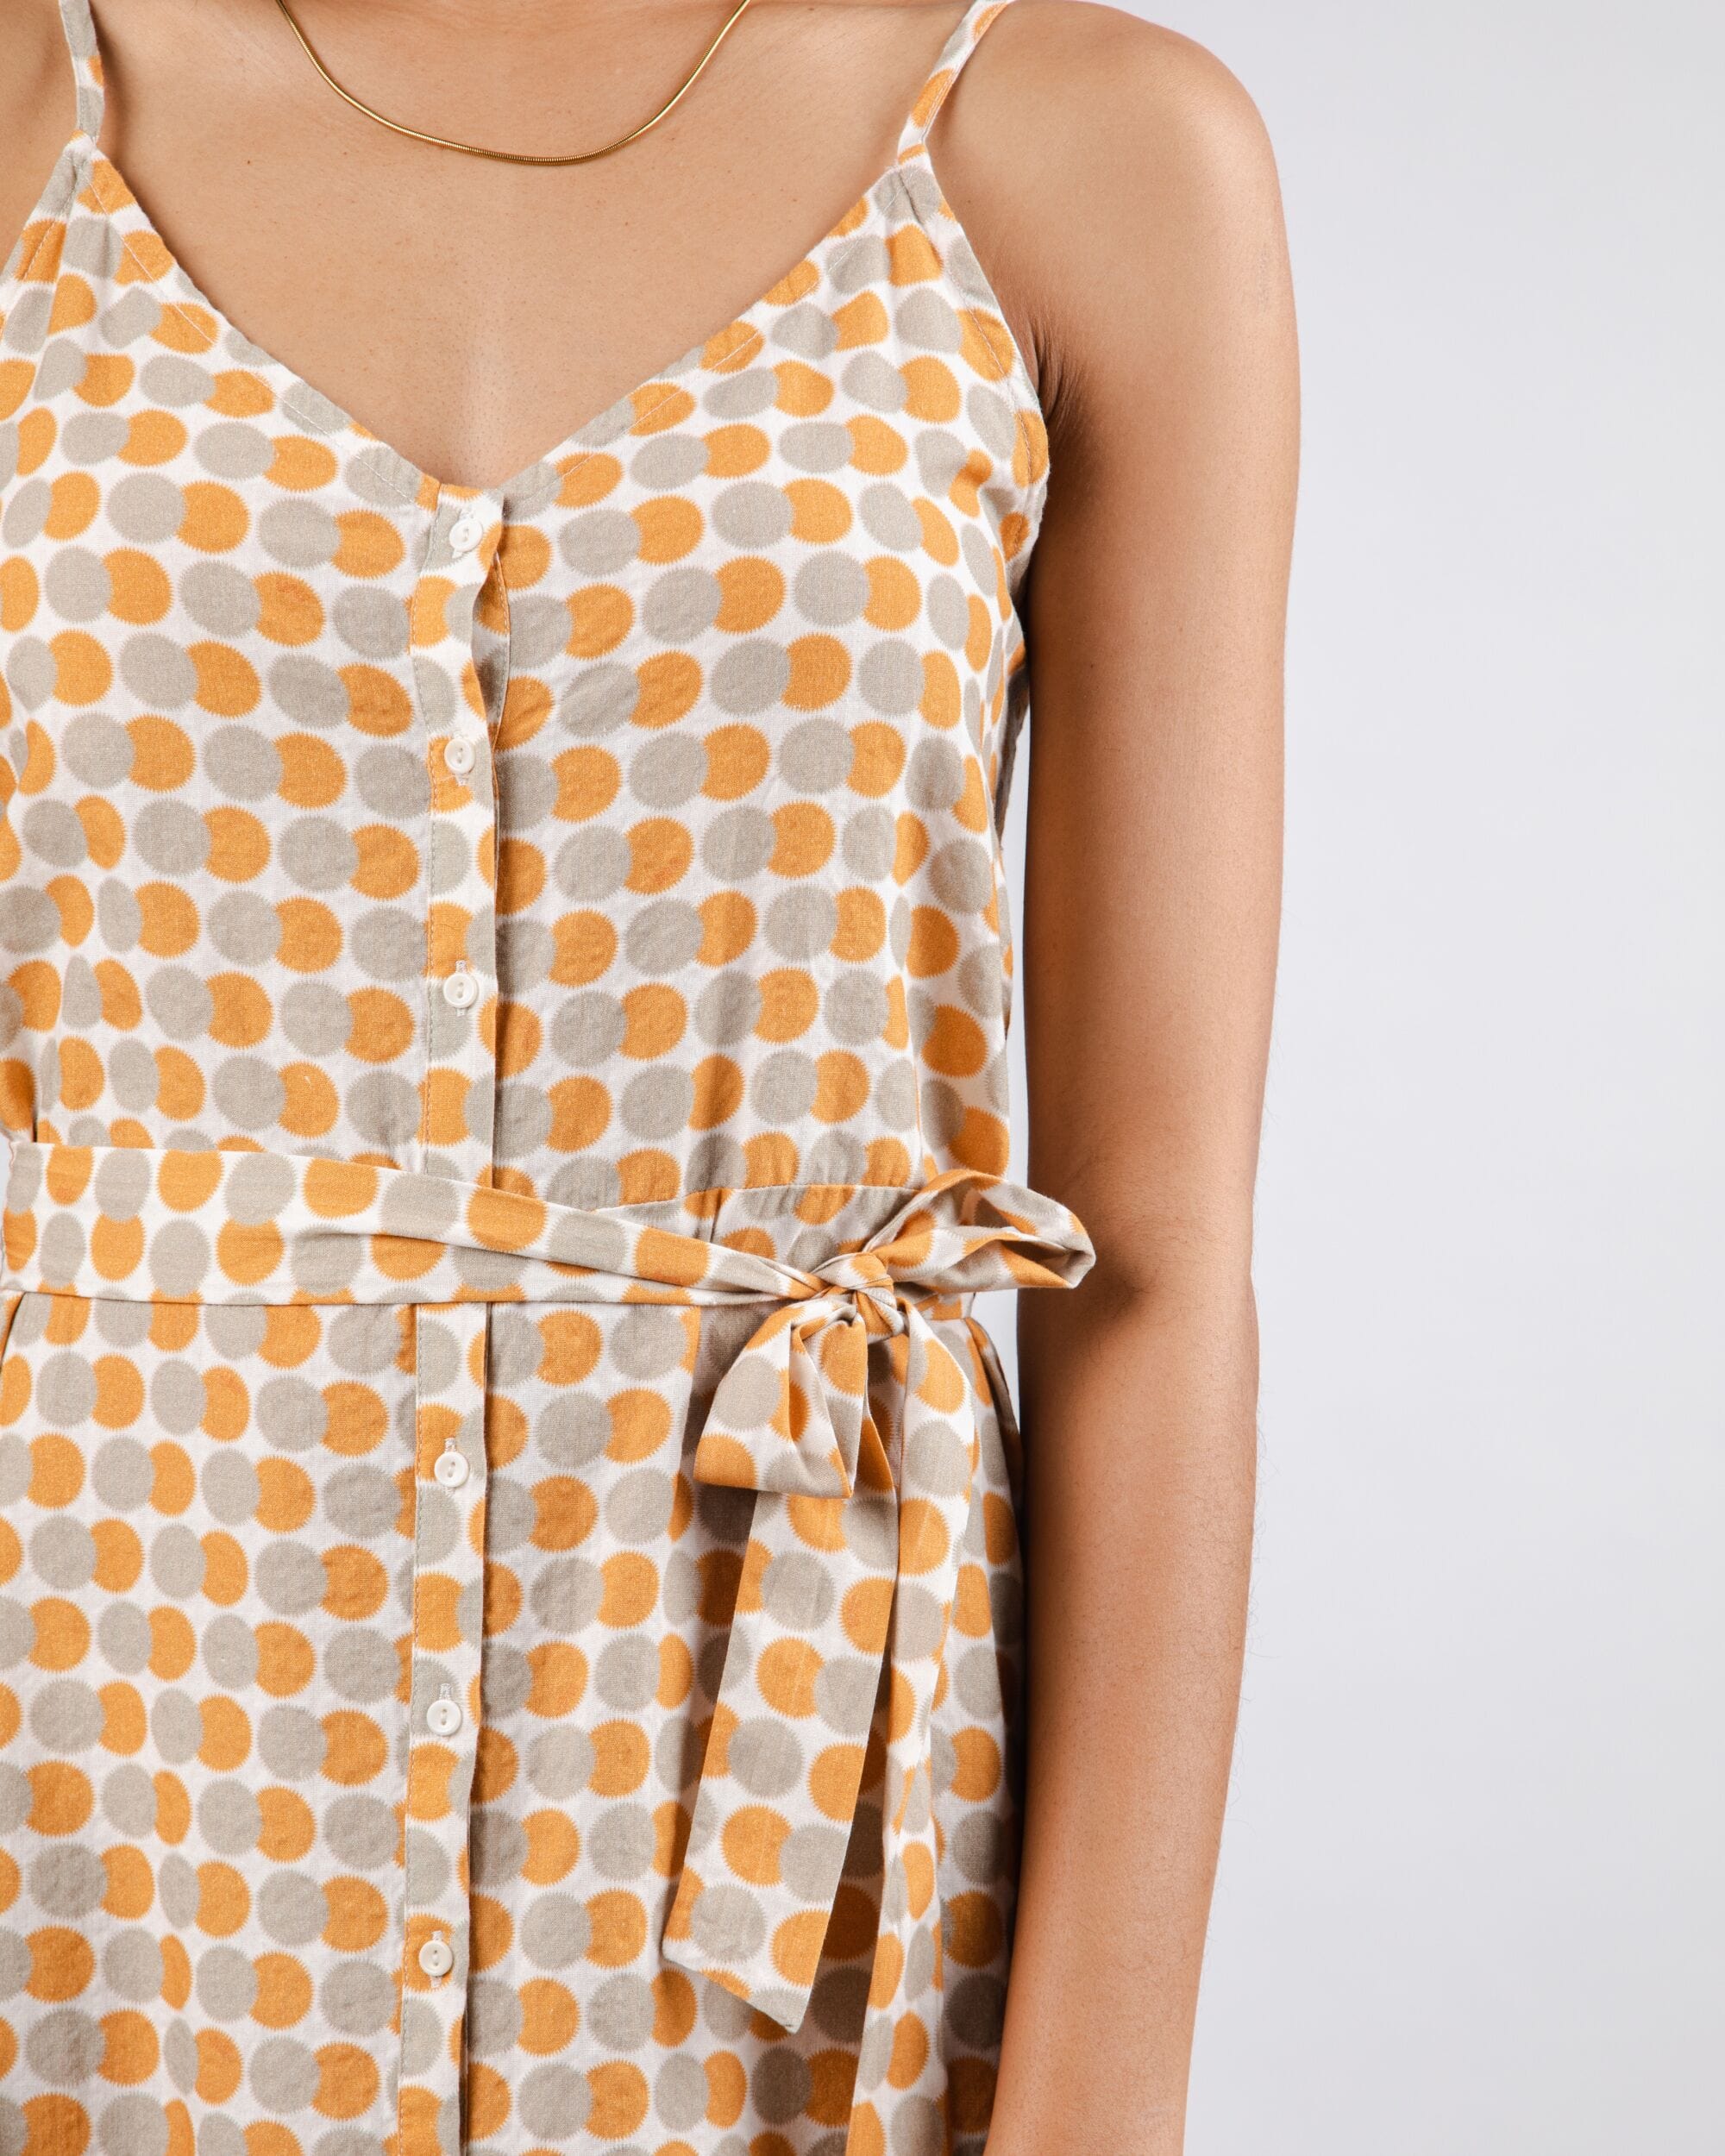 Brava Fabrics Kjoler Eclipse Strap Kjole i økologisk bomuld bæredygtig mode etisk mode